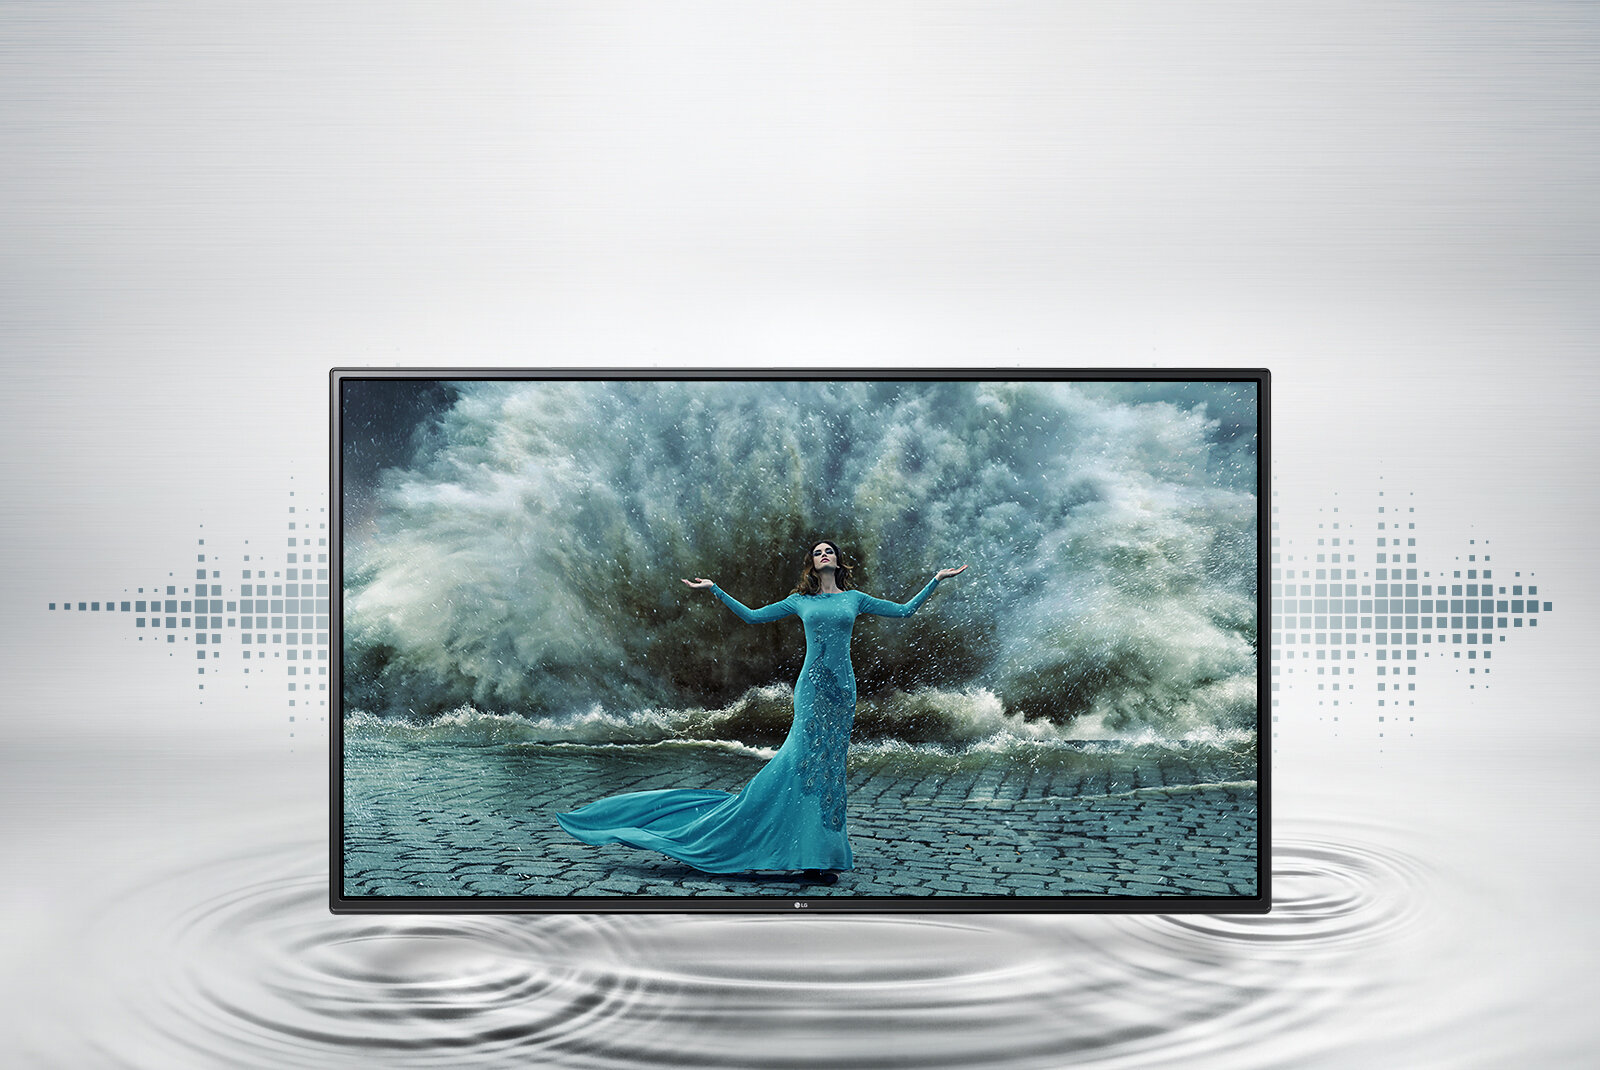 Tivi HD LG 32LH591D với thiết kế chắc chắn, cứng cáp giúp tạo điểm nhấn trong ngôi nhà của bạn